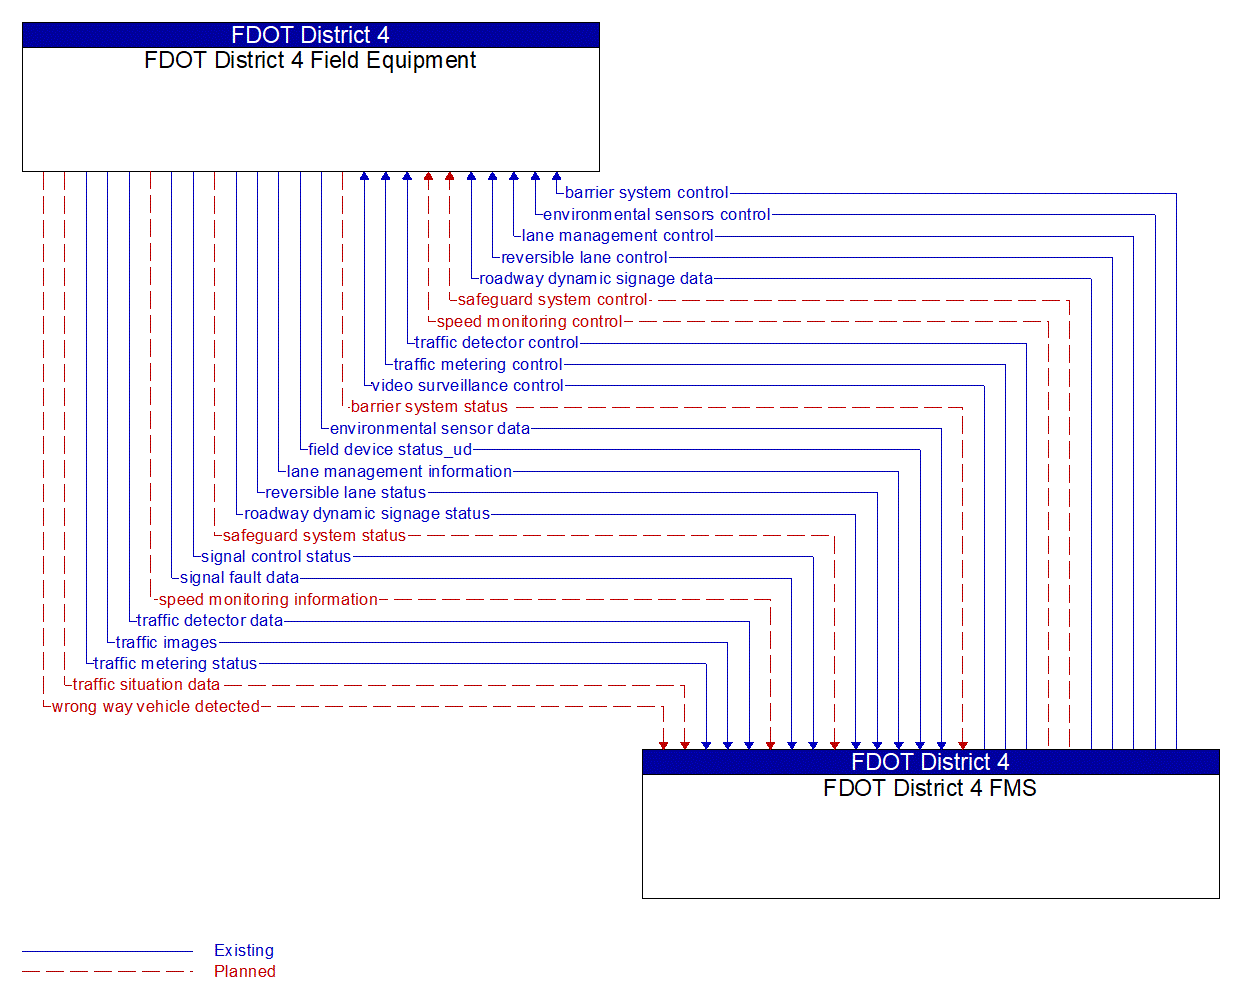 Architecture Flow Diagram: FDOT District 4 FMS <--> FDOT District 4 Field Equipment